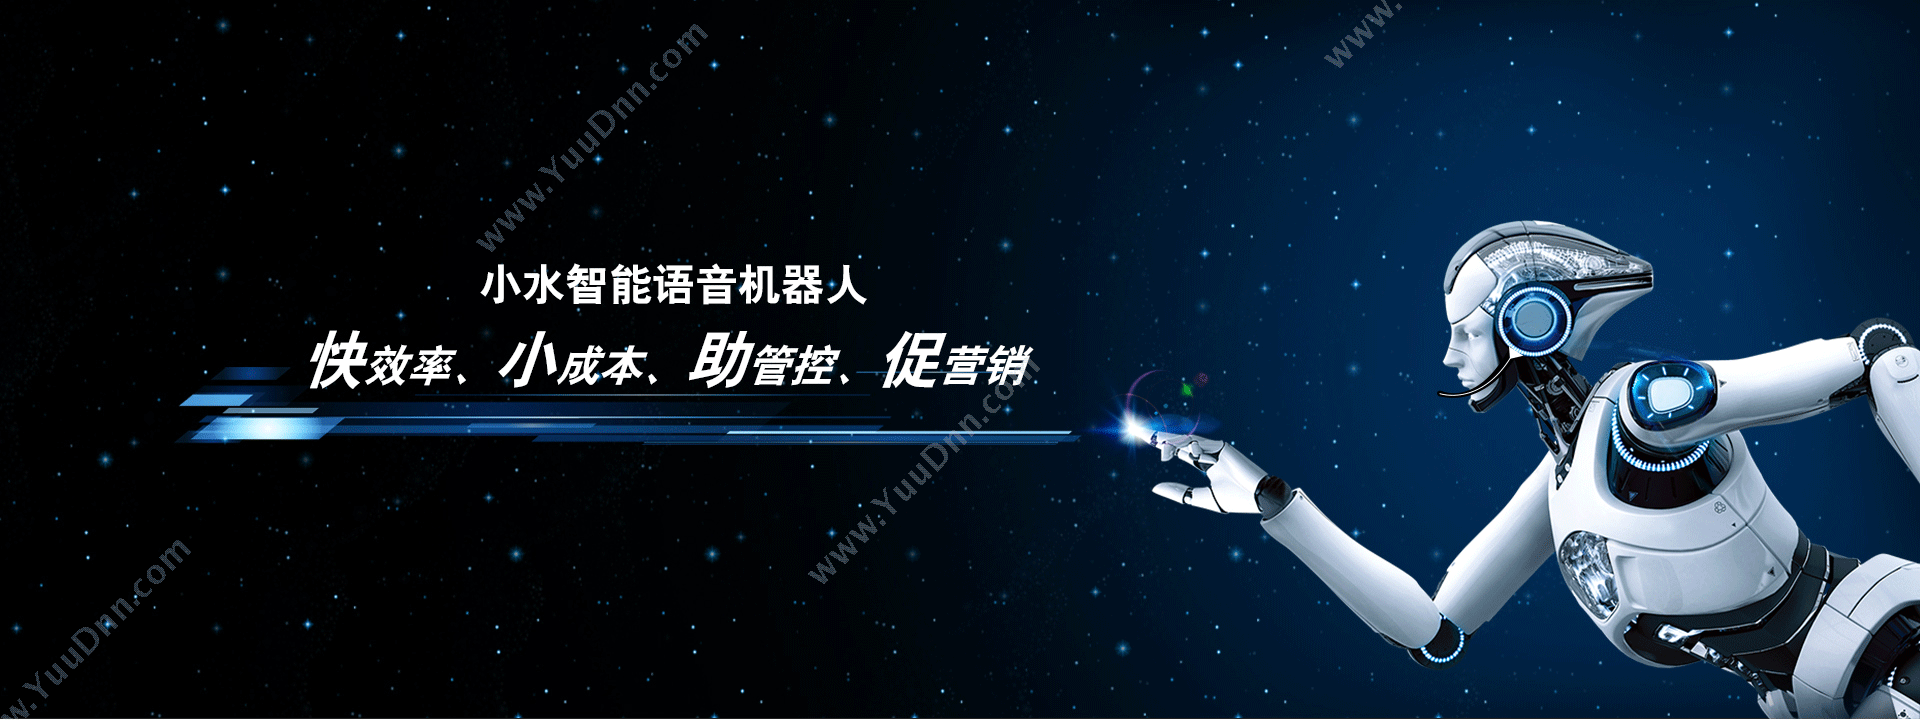 北京烽火万家科技有限公司 小水智能-电话机器人 客服机器人